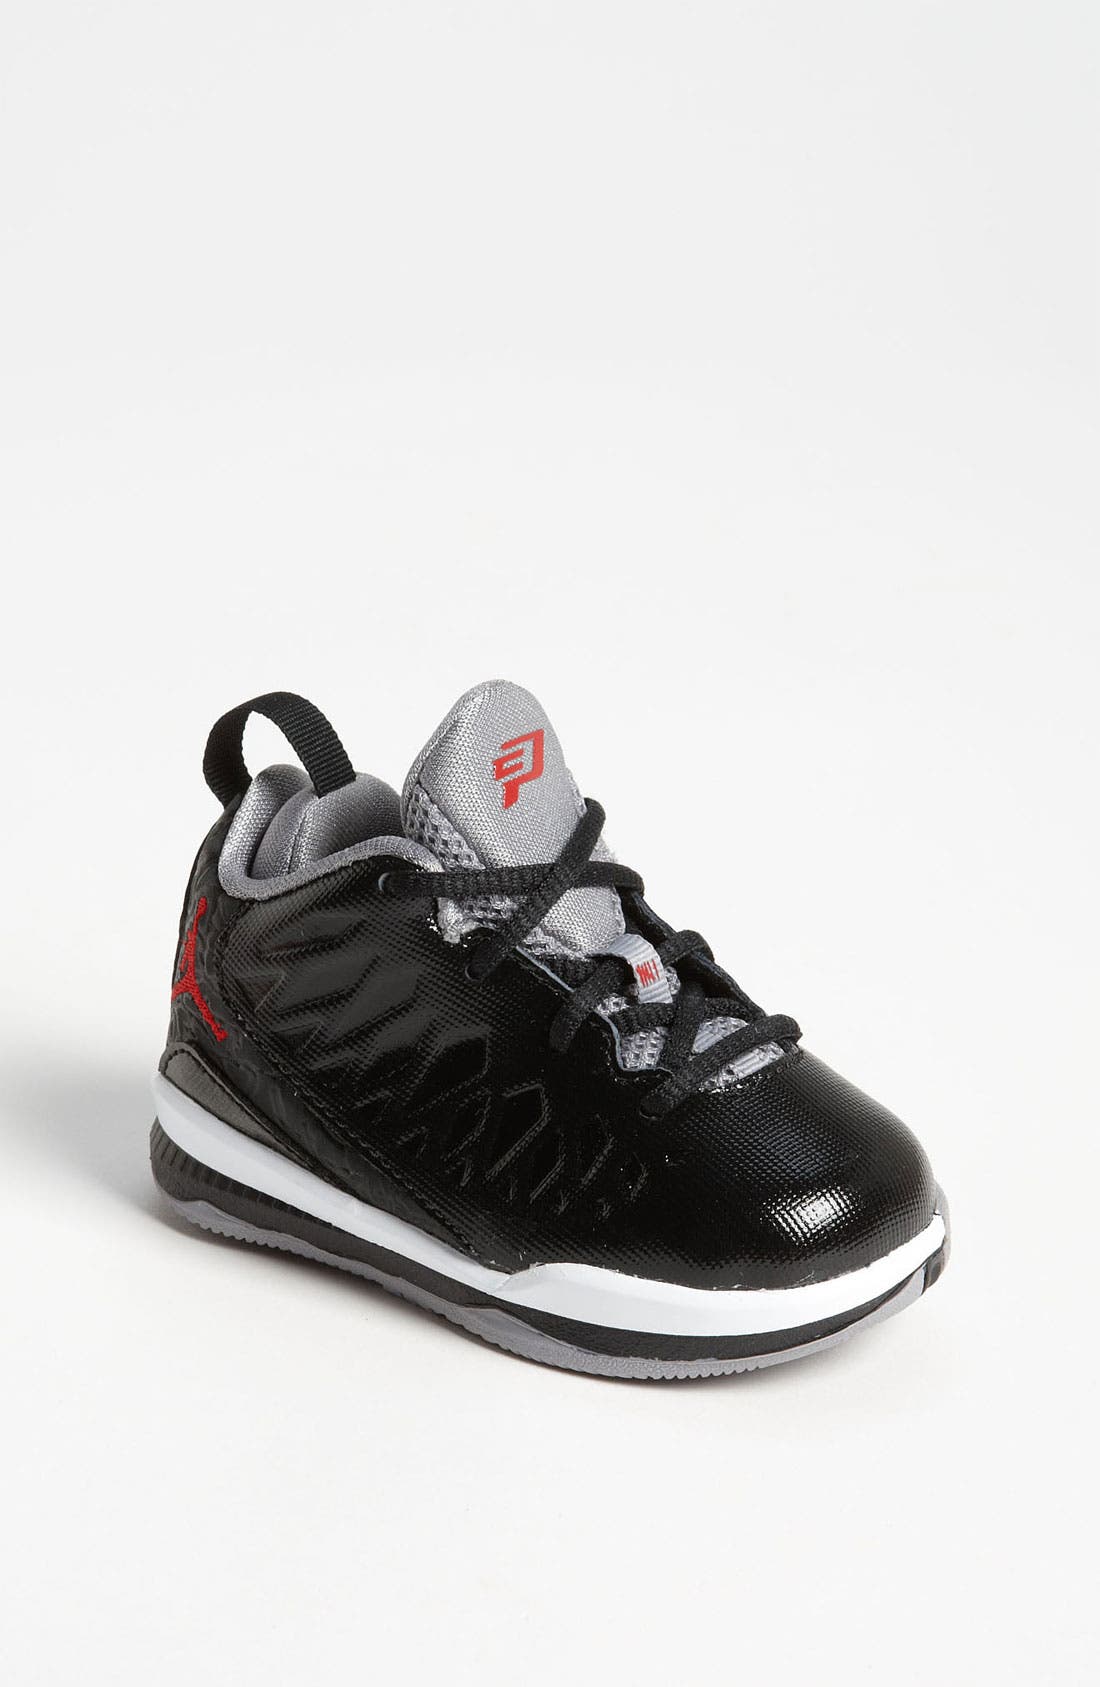 Nike Air Jordan CP3 VI prijs